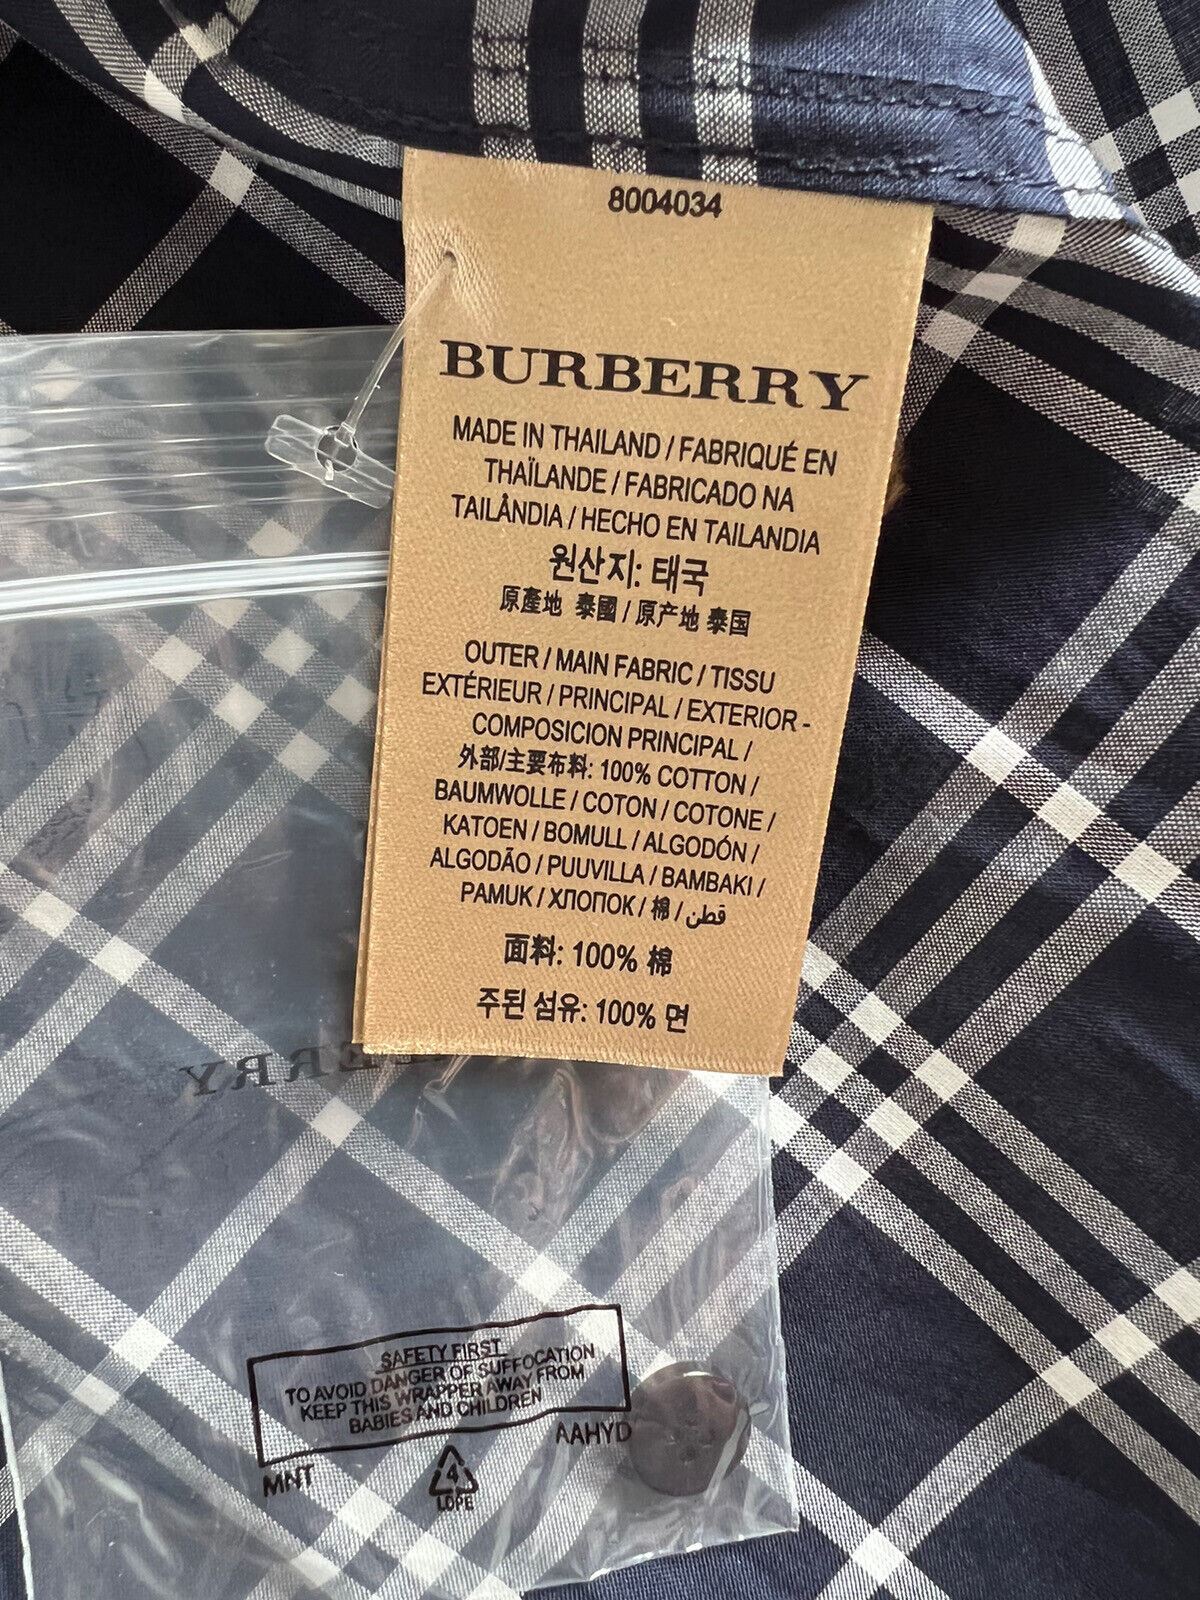 Женская темно-синяя рубашка на пуговицах в клетку Burberry стоимостью 350 долларов NWT 2 США (4 Великобритании) 